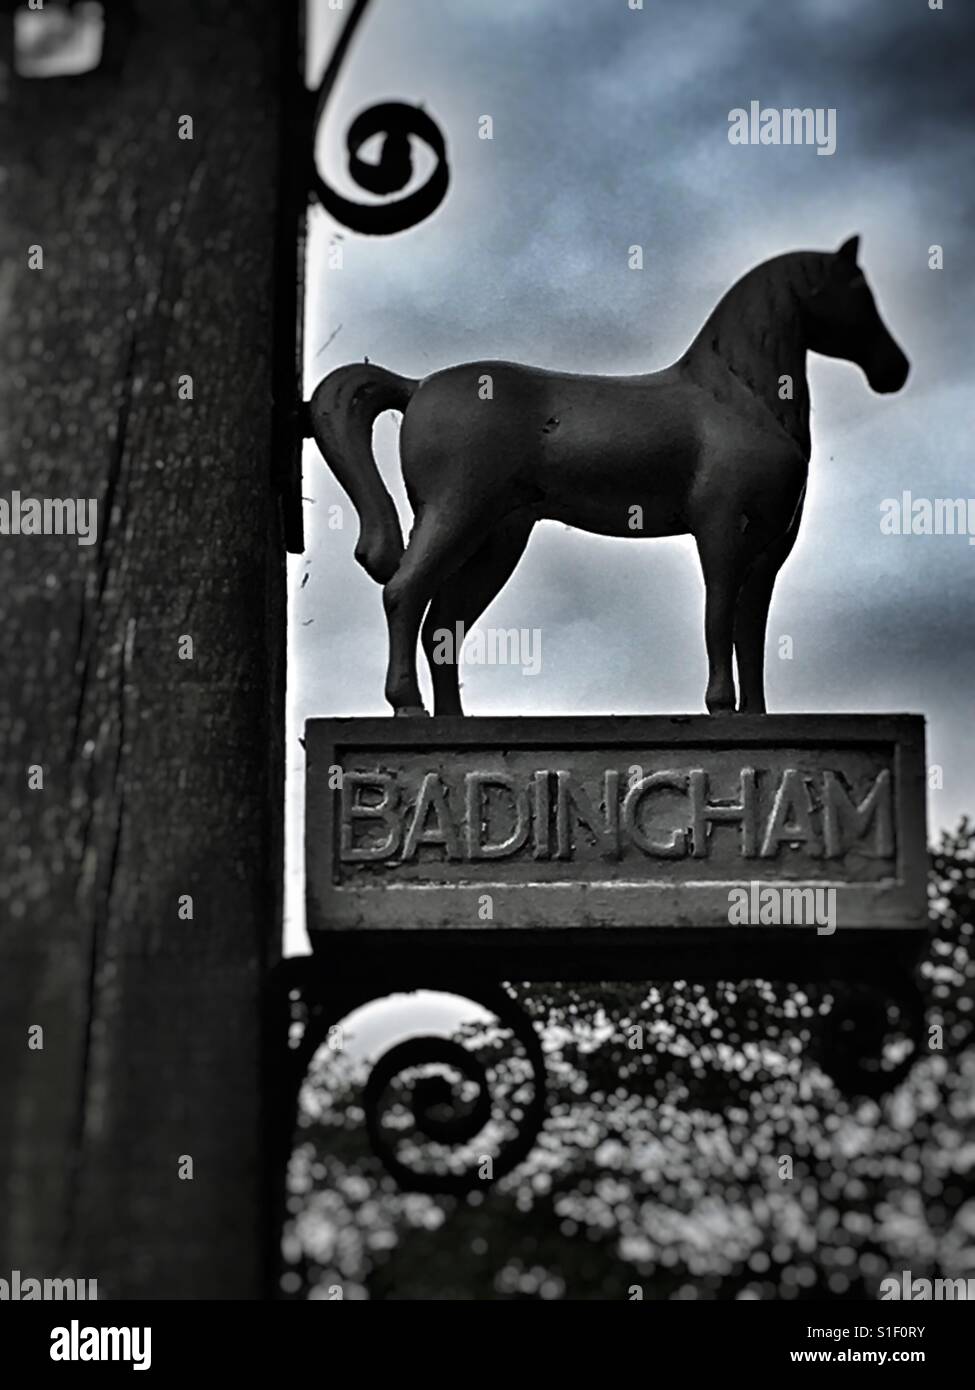 Badingham White Horse Vintage Pub Sign. Stock Photo